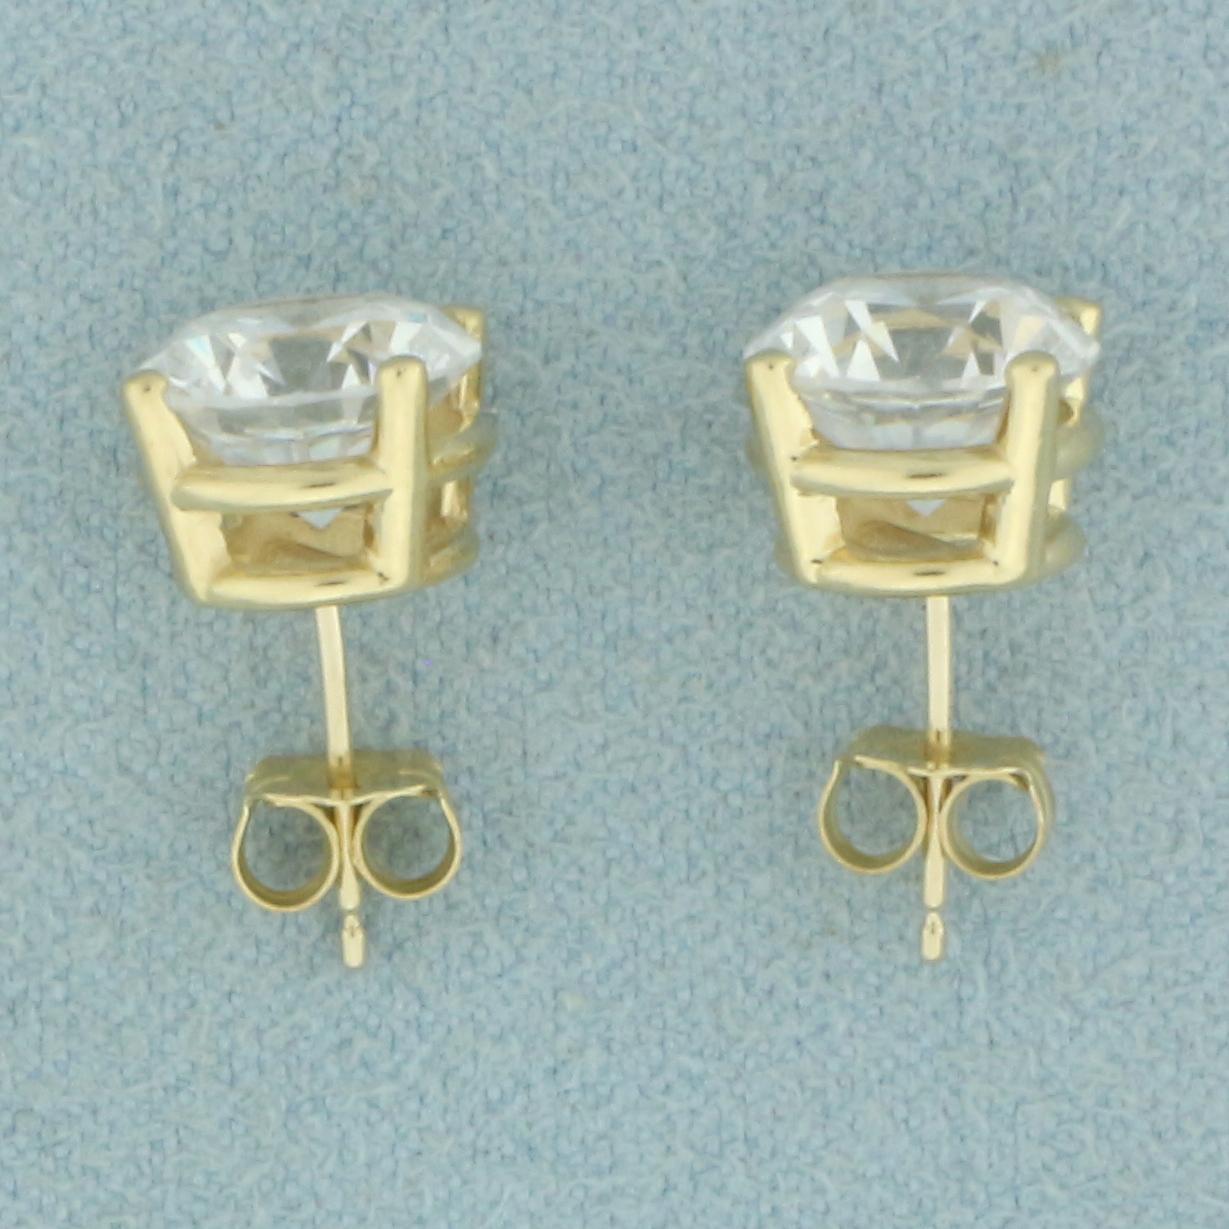 4ct Cz Stud Earrings In 14k Yellow Gold